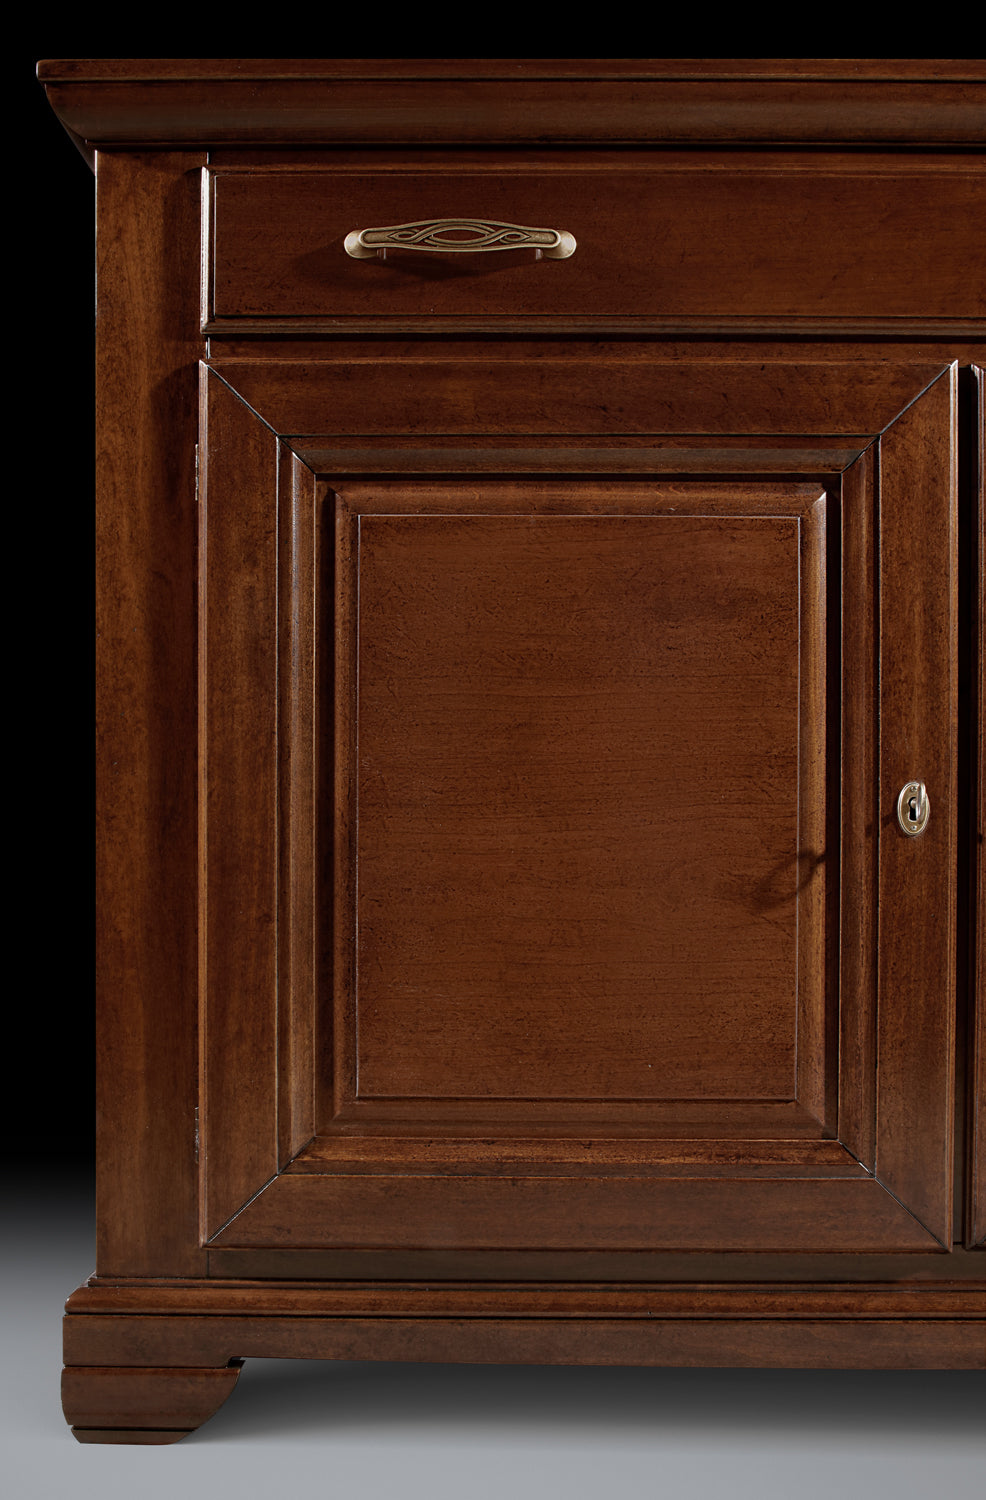 Dettaglio dell'anta con Bugna per la Credenza madia contenitore classica in legno di ciliegio, 2 porte con bugna,1 cassetto, collezione Arte Piombini 8810B